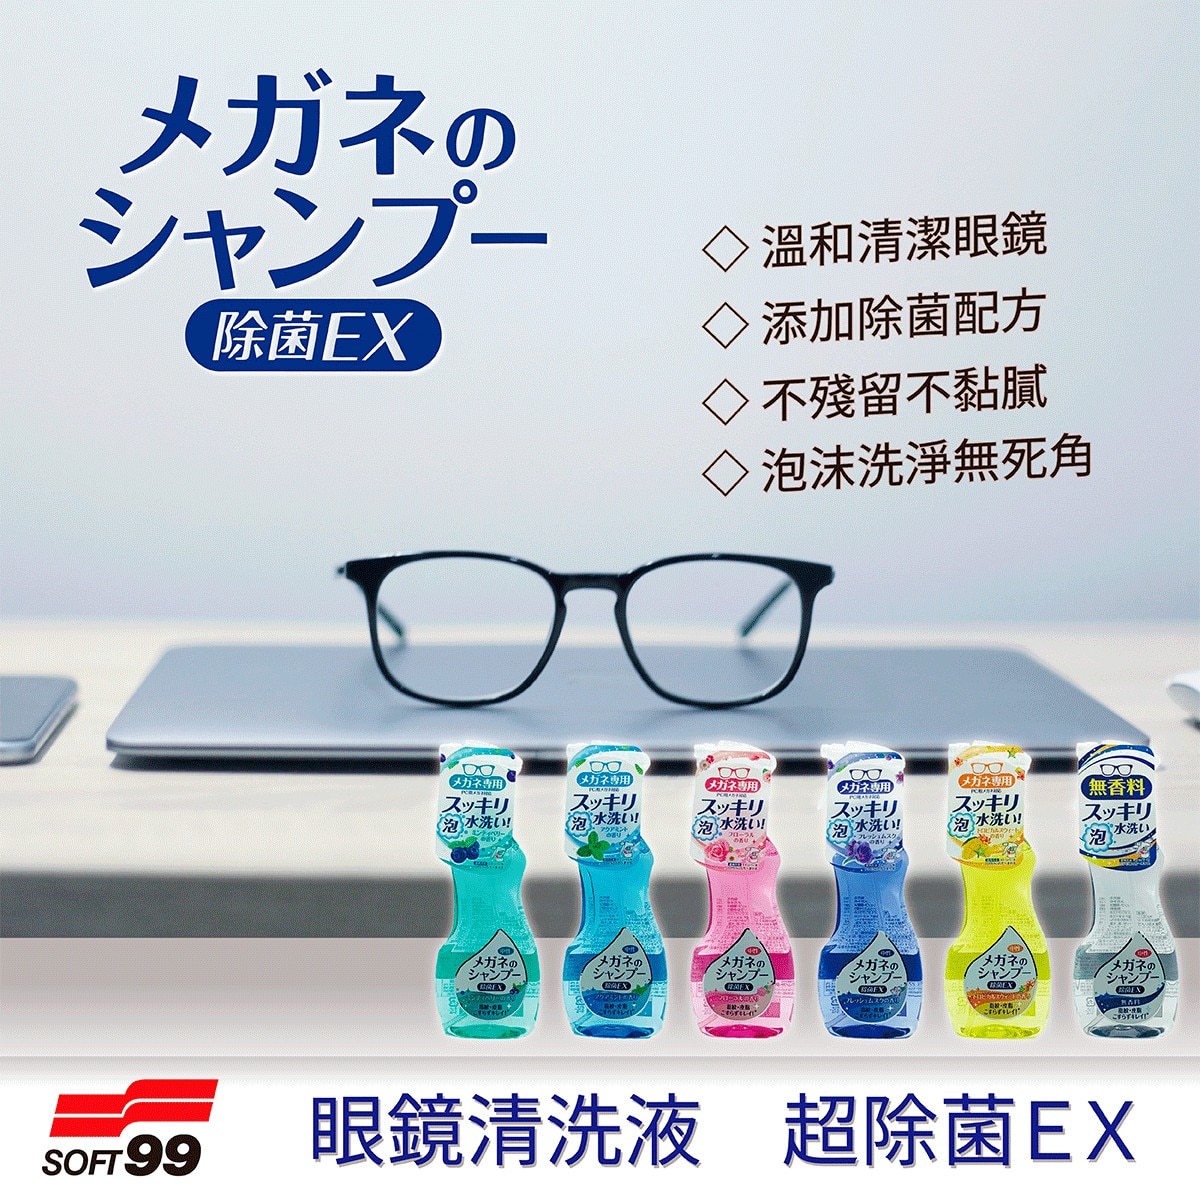 SOFT99 眼鏡清洗液3入，溫和清潔眼鏡，添加除菌配方，無需搓洗，噴上後沖洗即可。不殘留不黏膩，泡沫洗淨無死角。